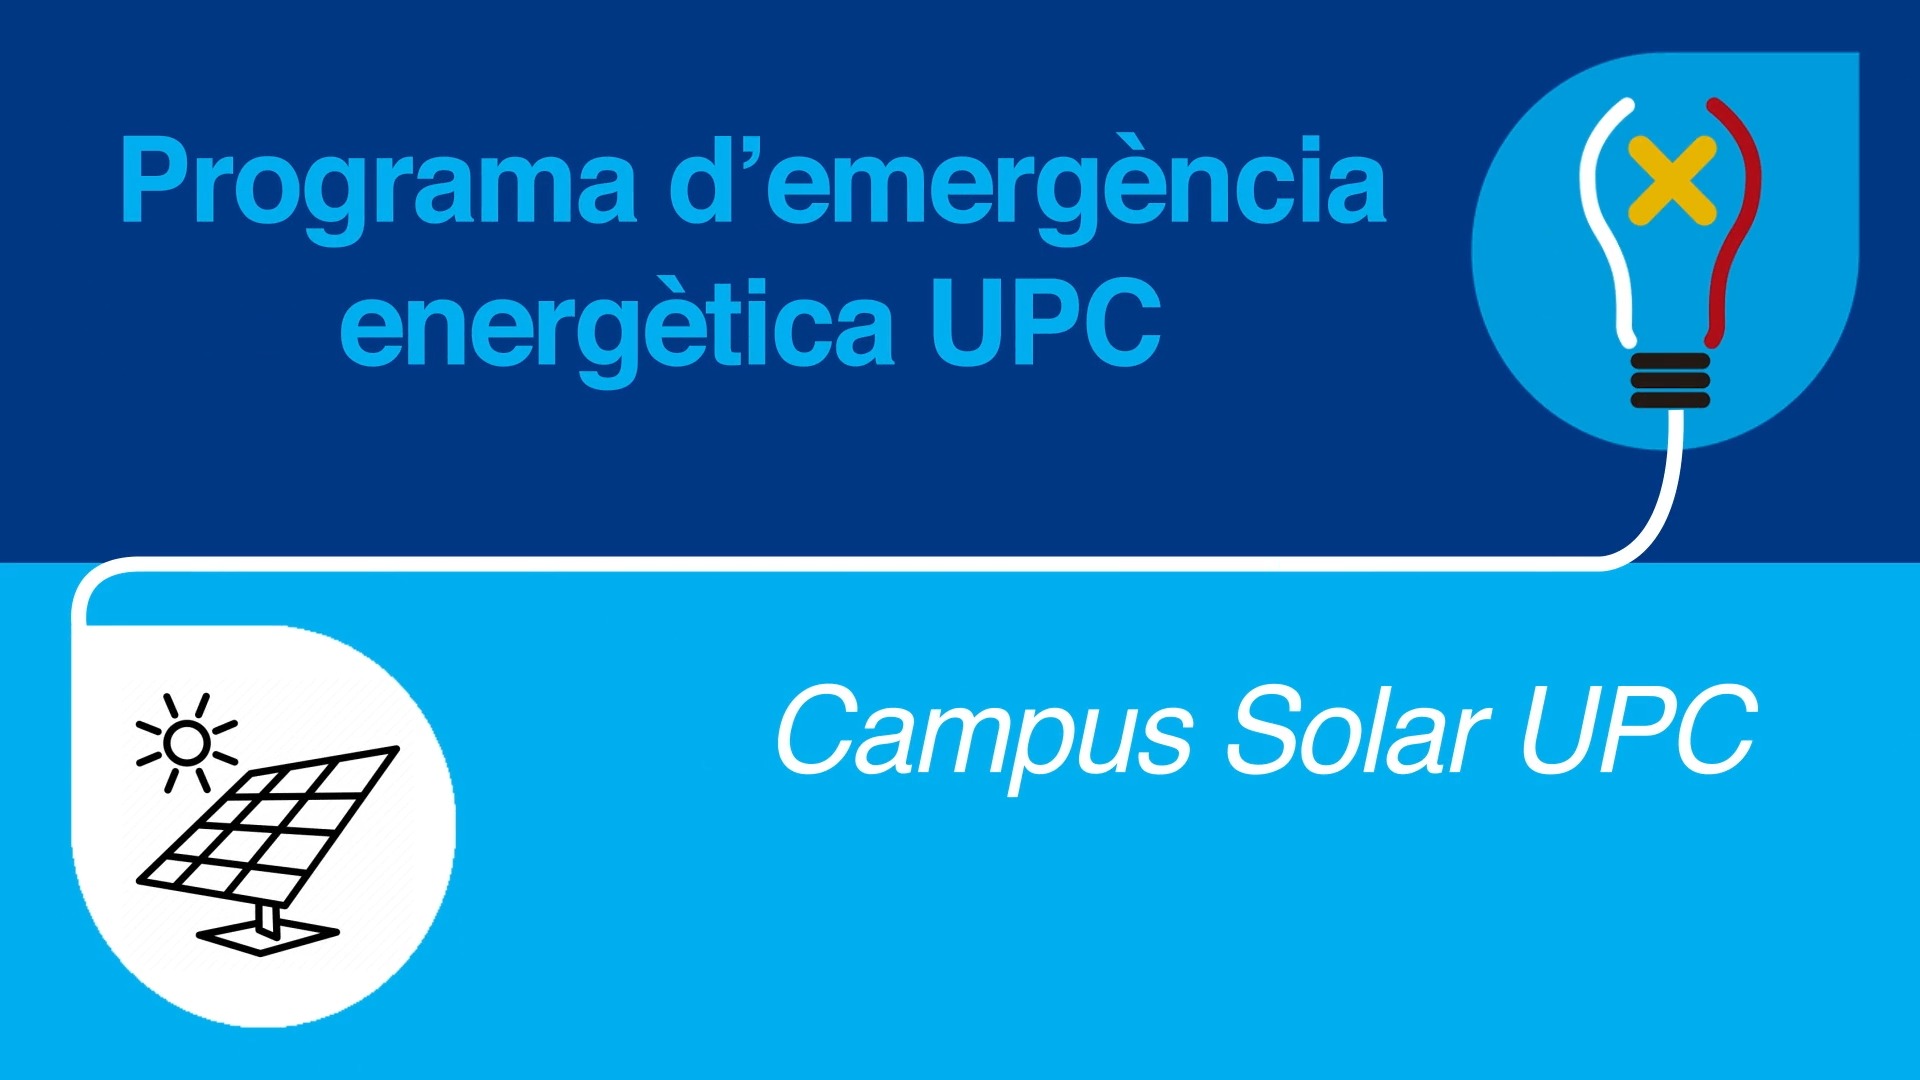 Campus Solar UPC